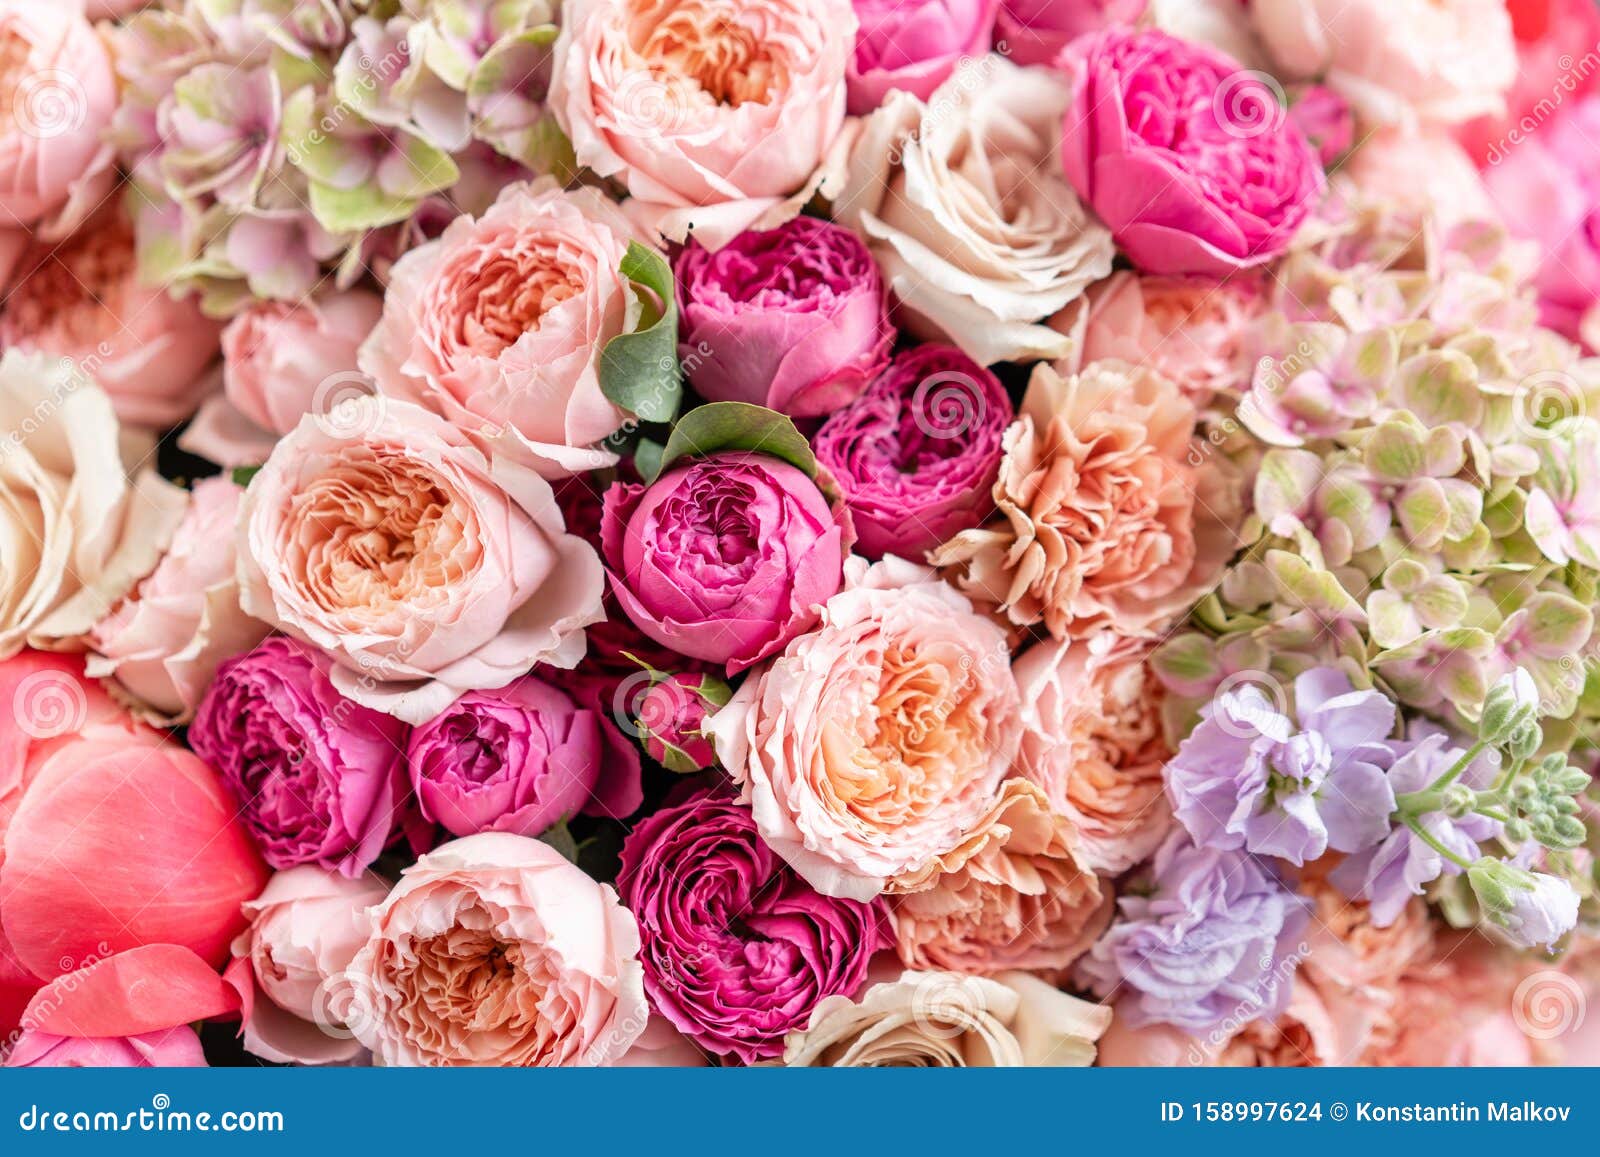 大型美花混合花束的特写花卉背景与壁纸花店概念美丽库存照片 图片包括有